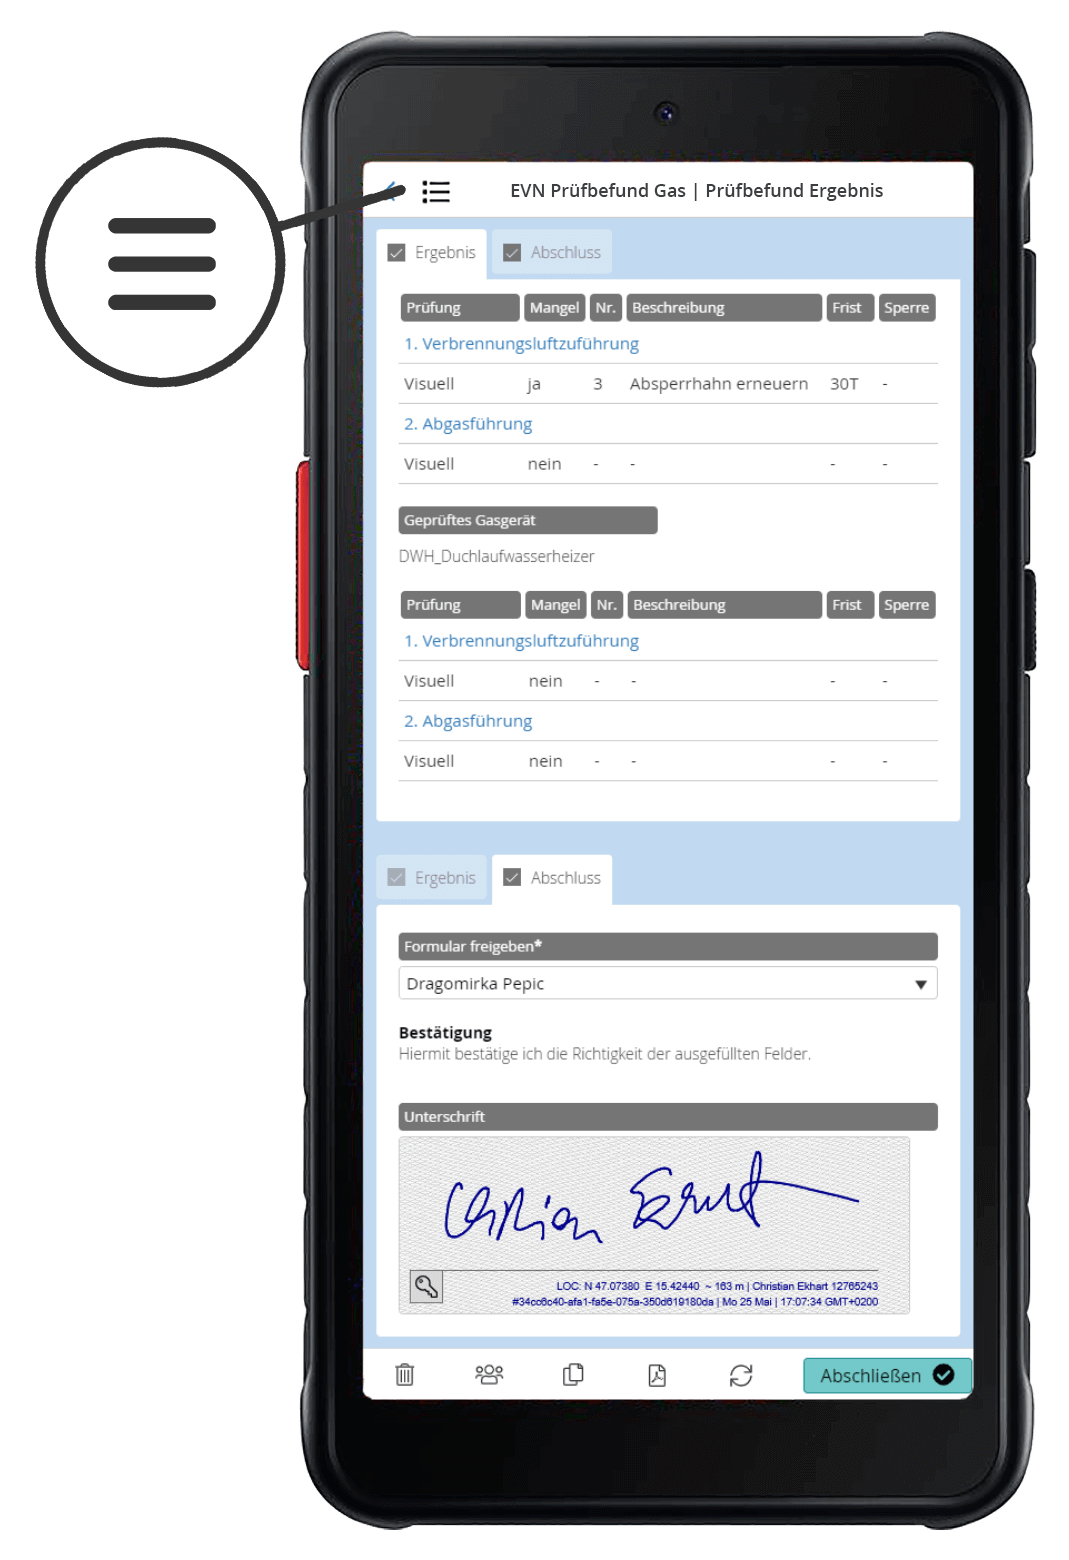 Netz Niederösterreich: Mobile responsive forms